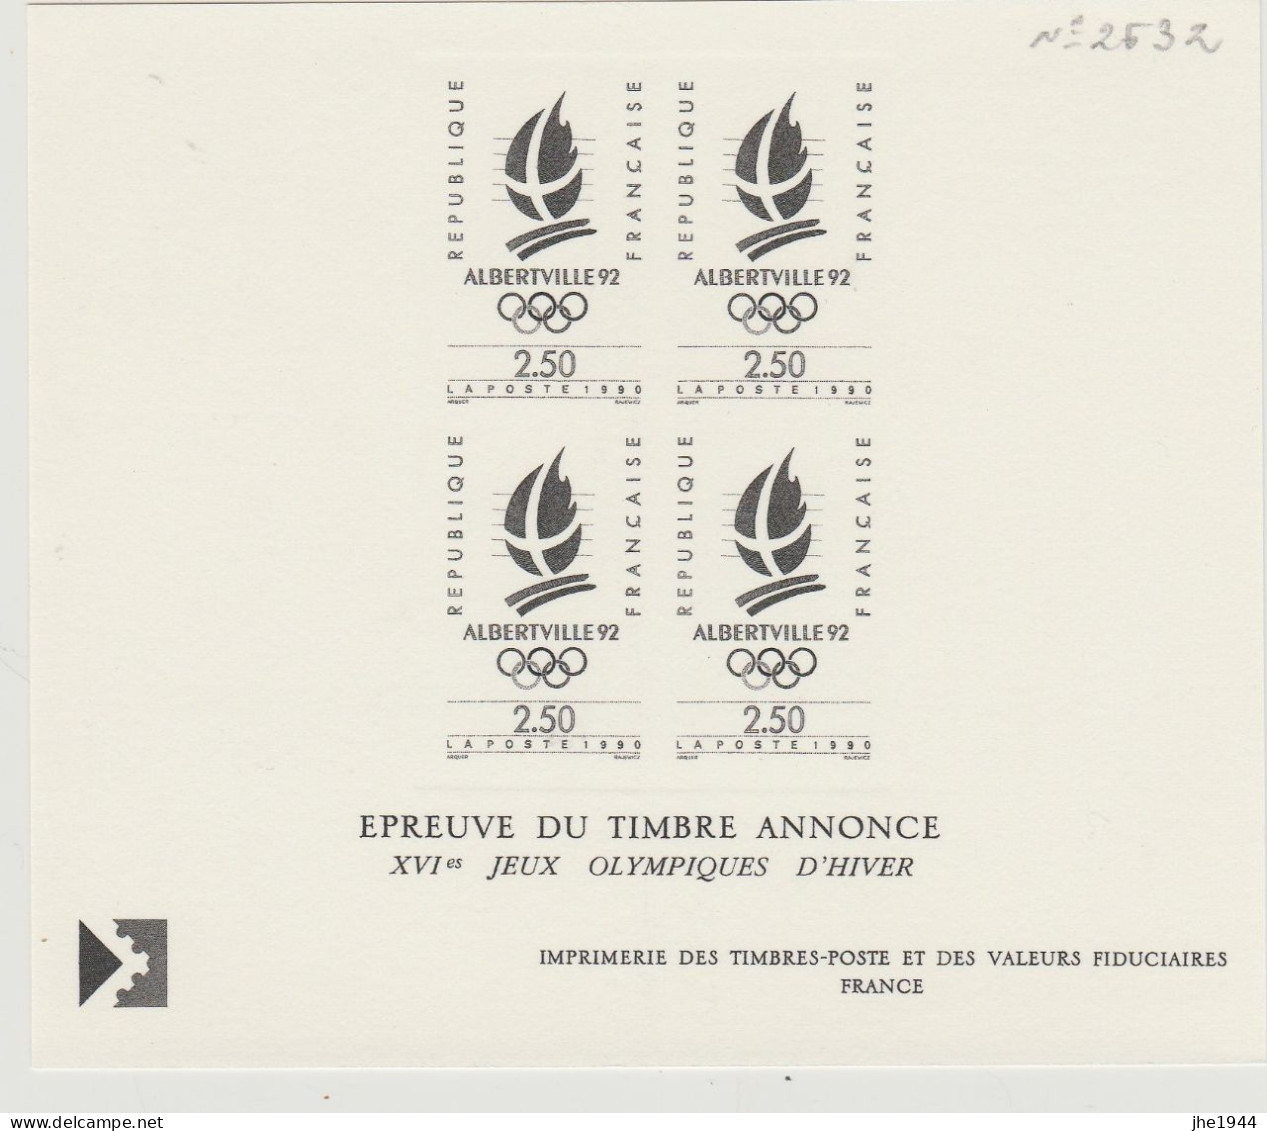 France Divers Ensemble 9 épreuves de timbres courants (Voir détail)